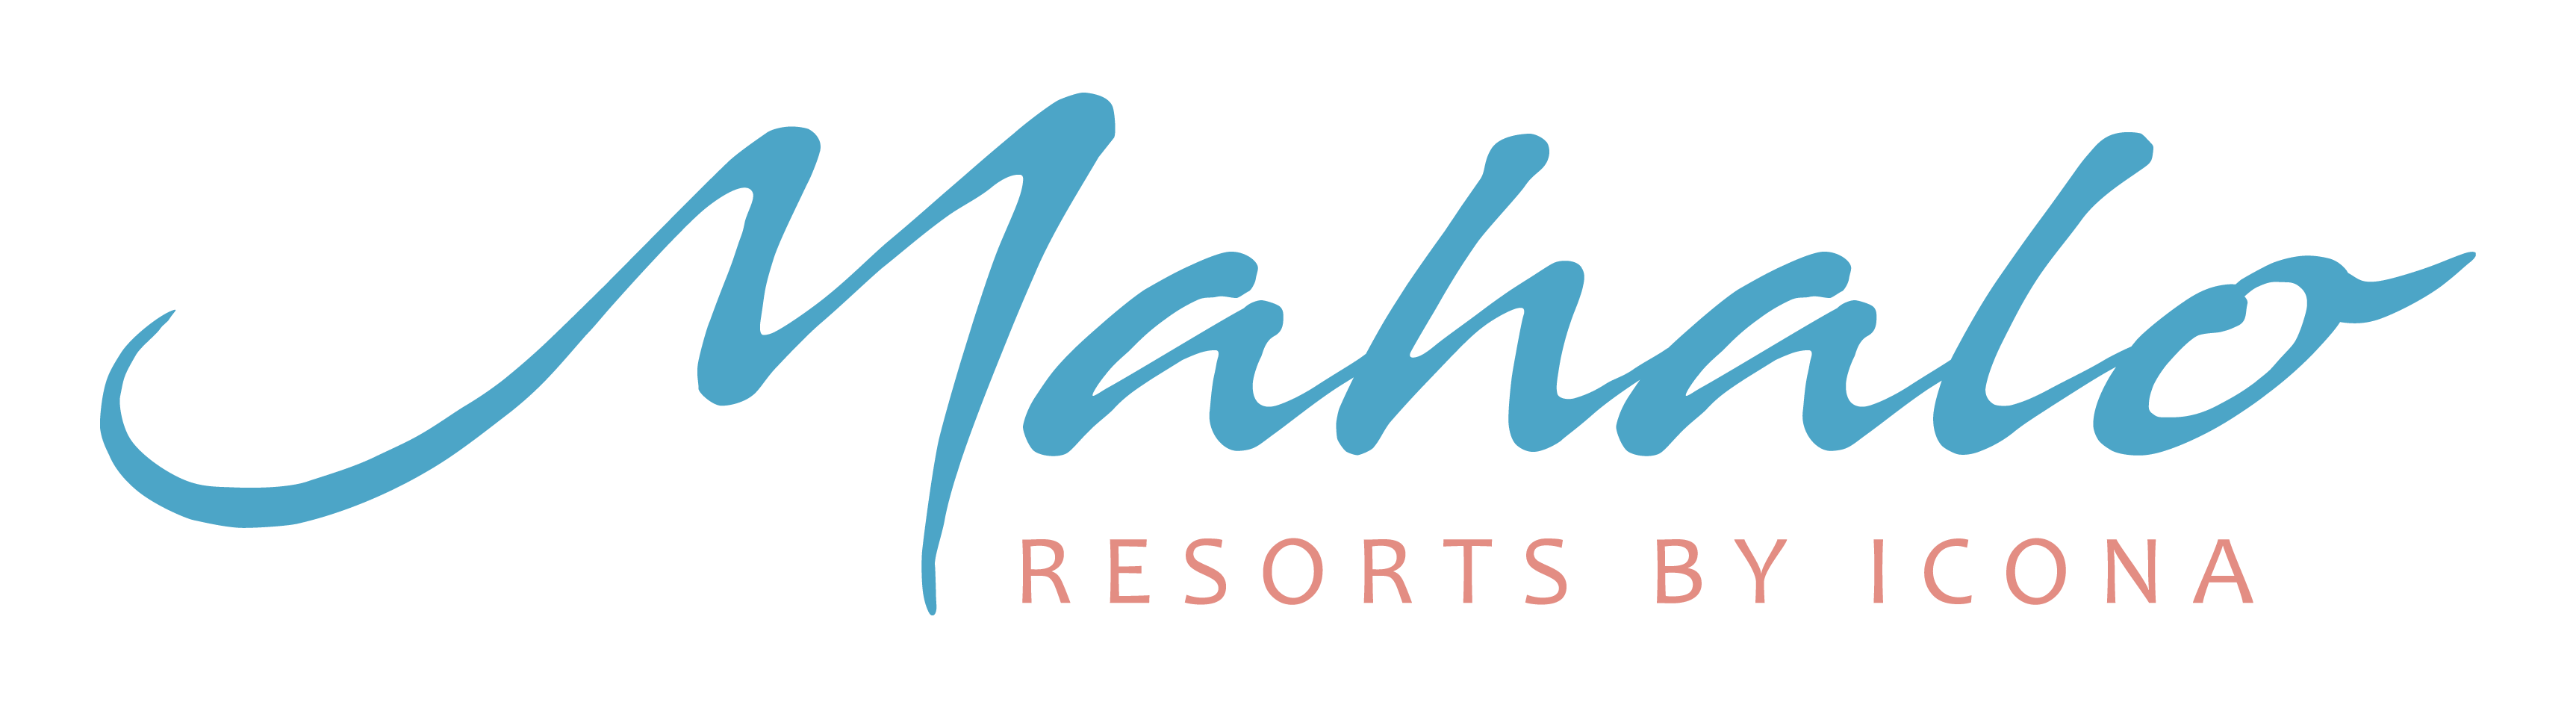 Mahalo resorts by ICONA logo